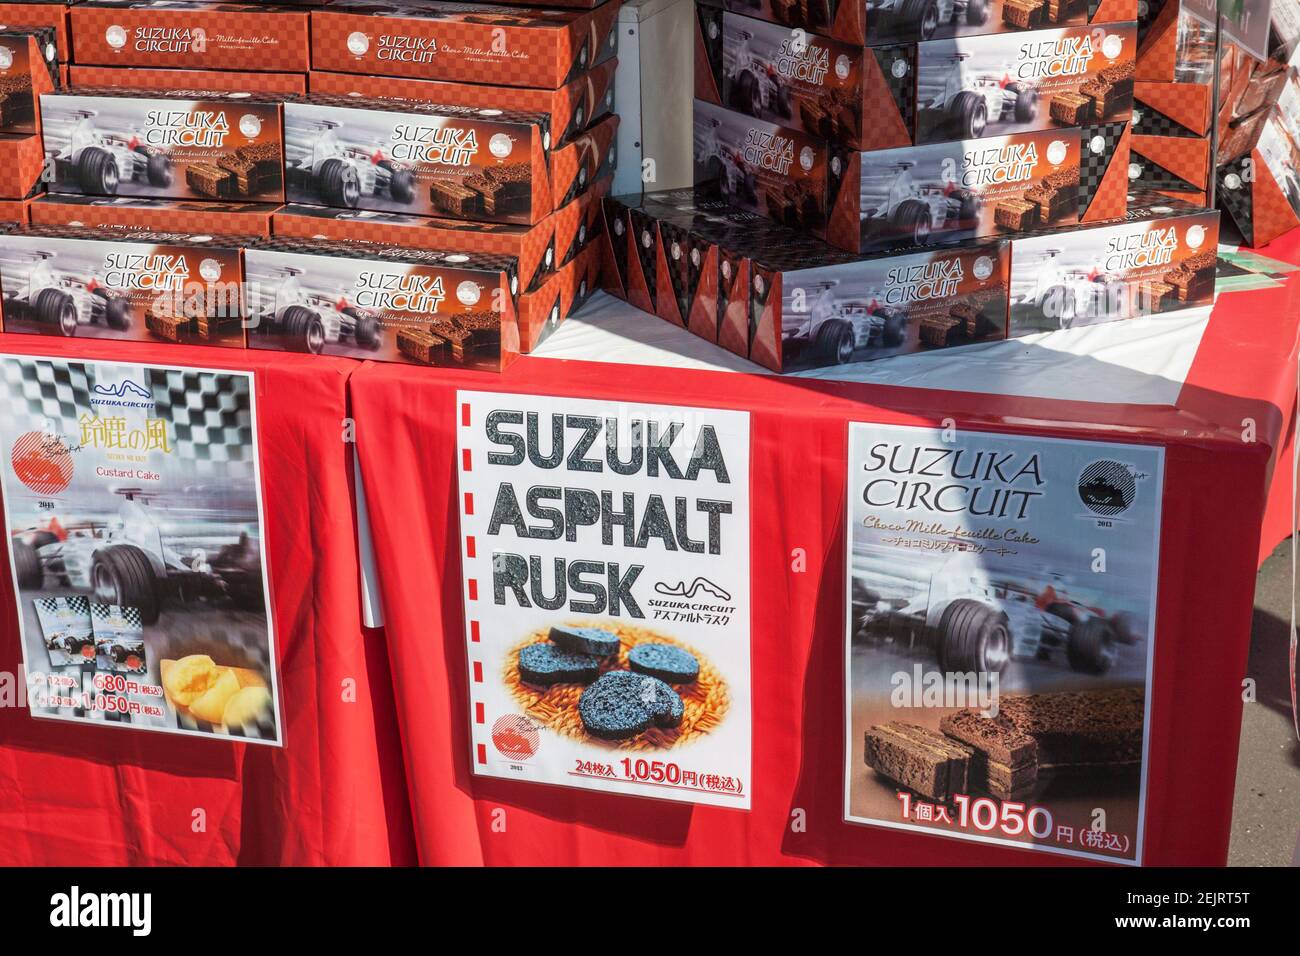 Asfalto japonés rusk galleta galletas galletas souvenirs omiyage a la venta en el Gran Premio de Fórmula 1 Japonés en el Circuito de Suzuka, Mie, Japón Foto de stock